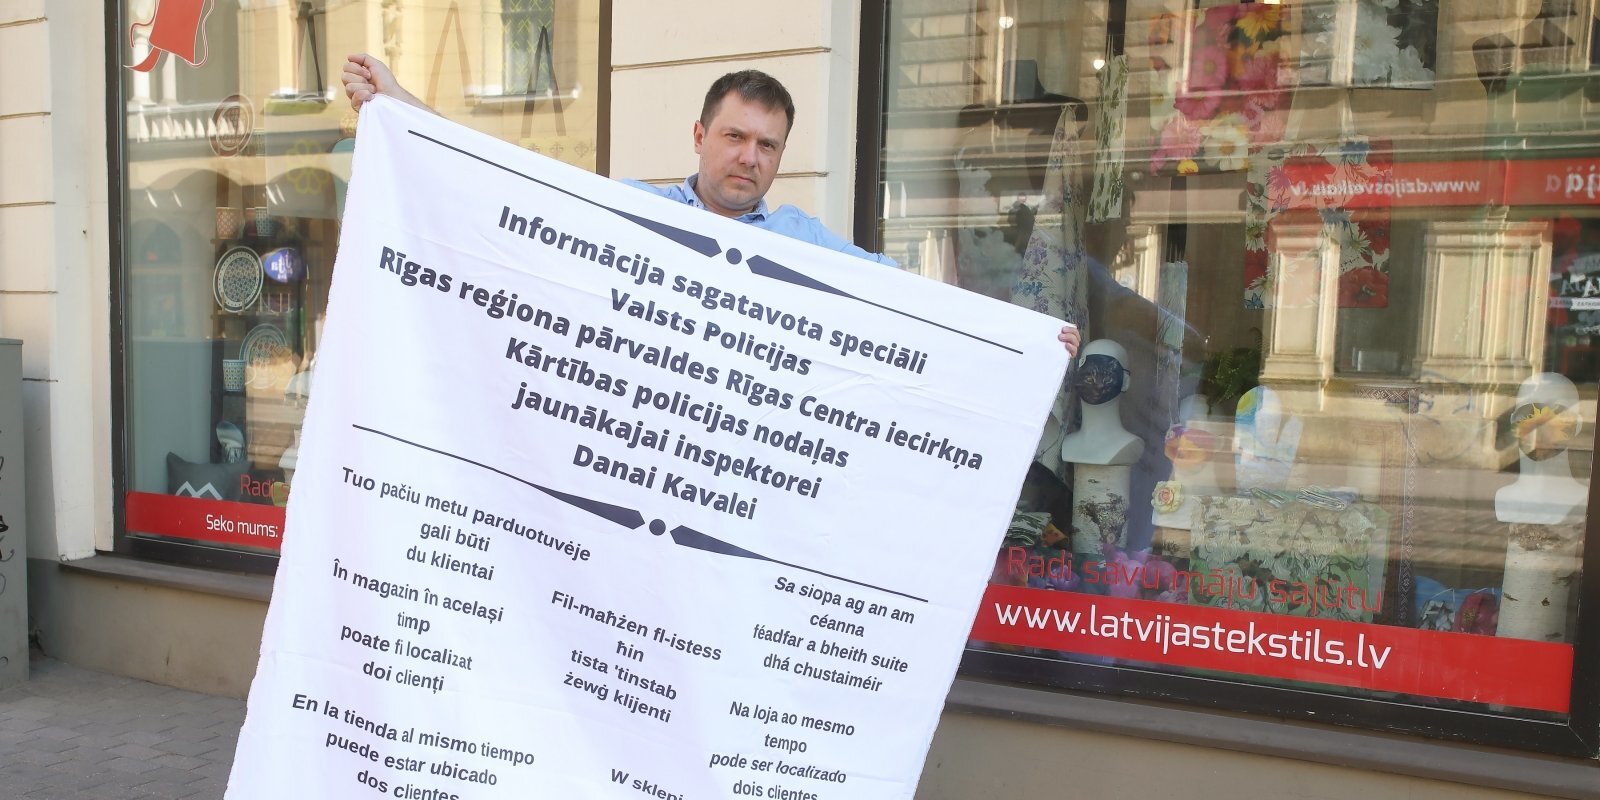 'Latvijas Tekstils' protesta performance pret policijas uzlikto sodu un masku biznesa slavas gājiens